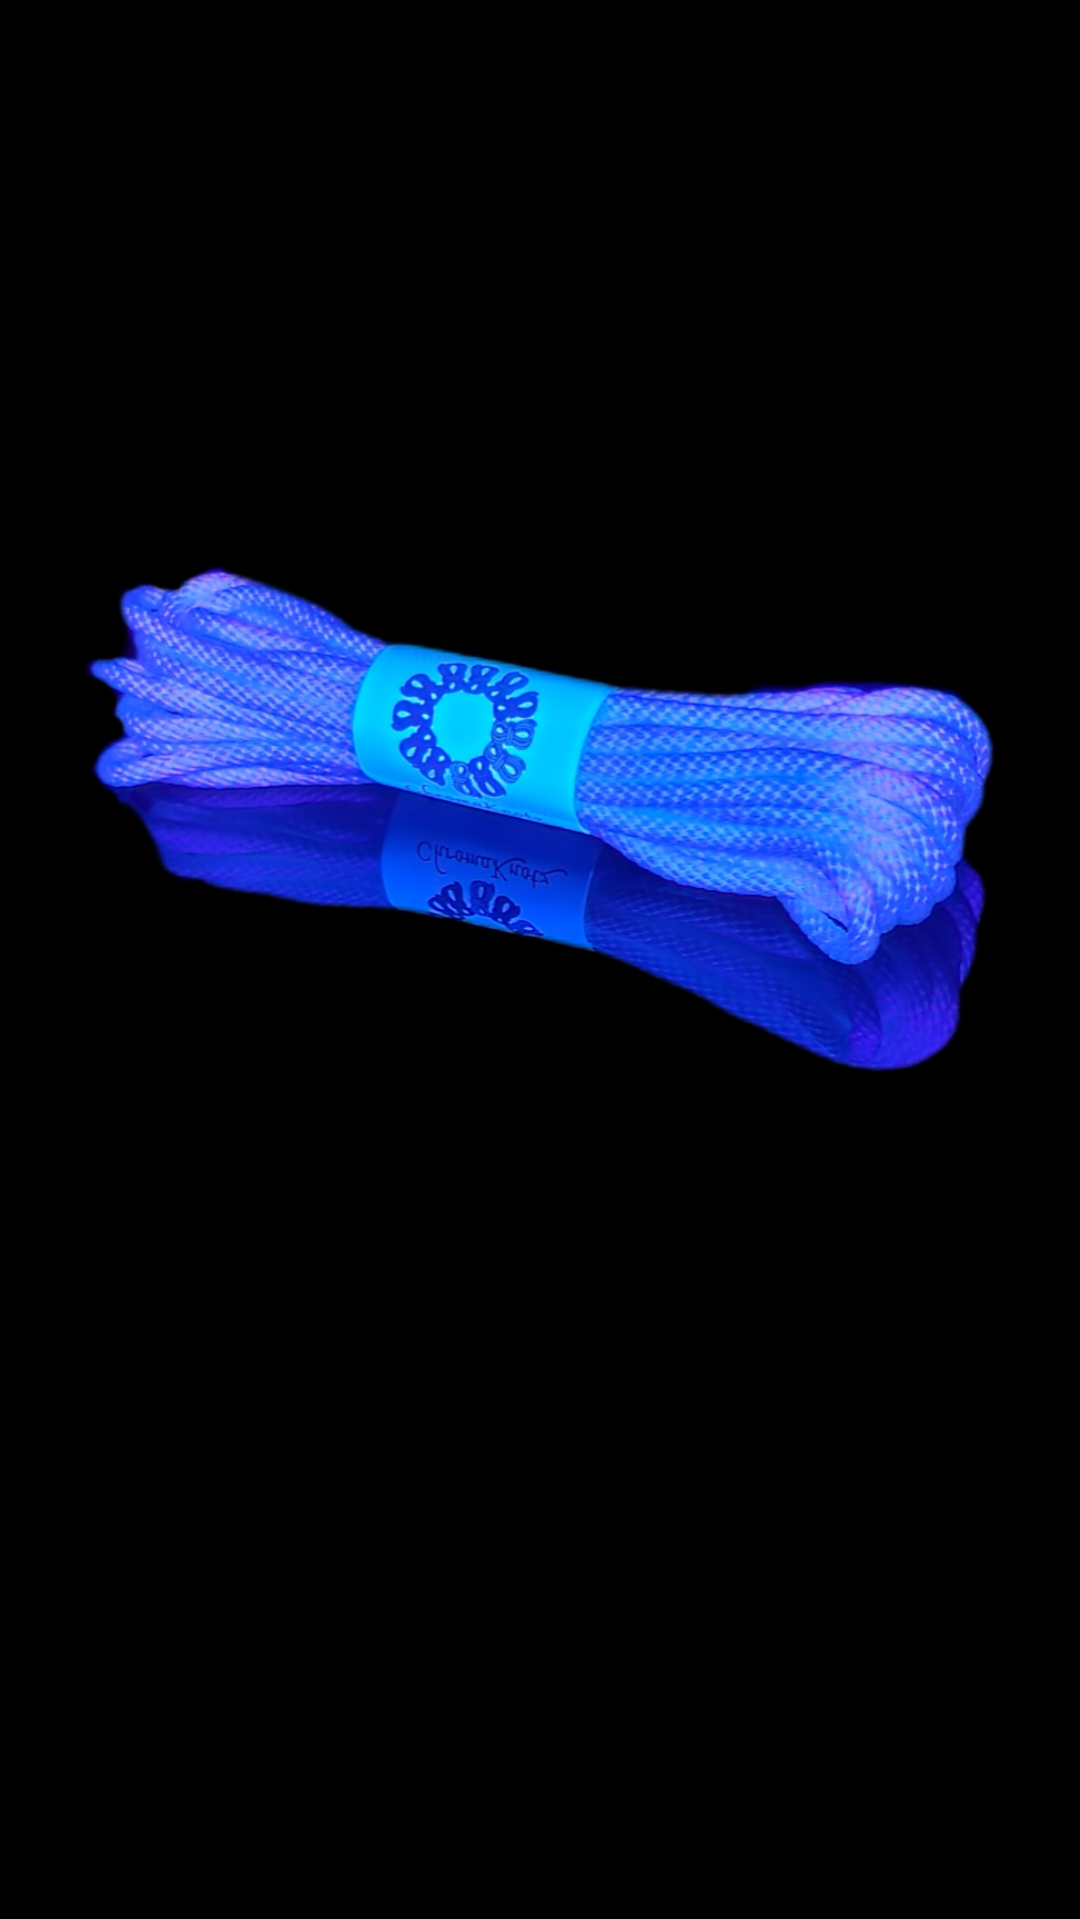 Chroma Blue 8 jute rope (8m x 5-pack) – Douglas Kent Rope